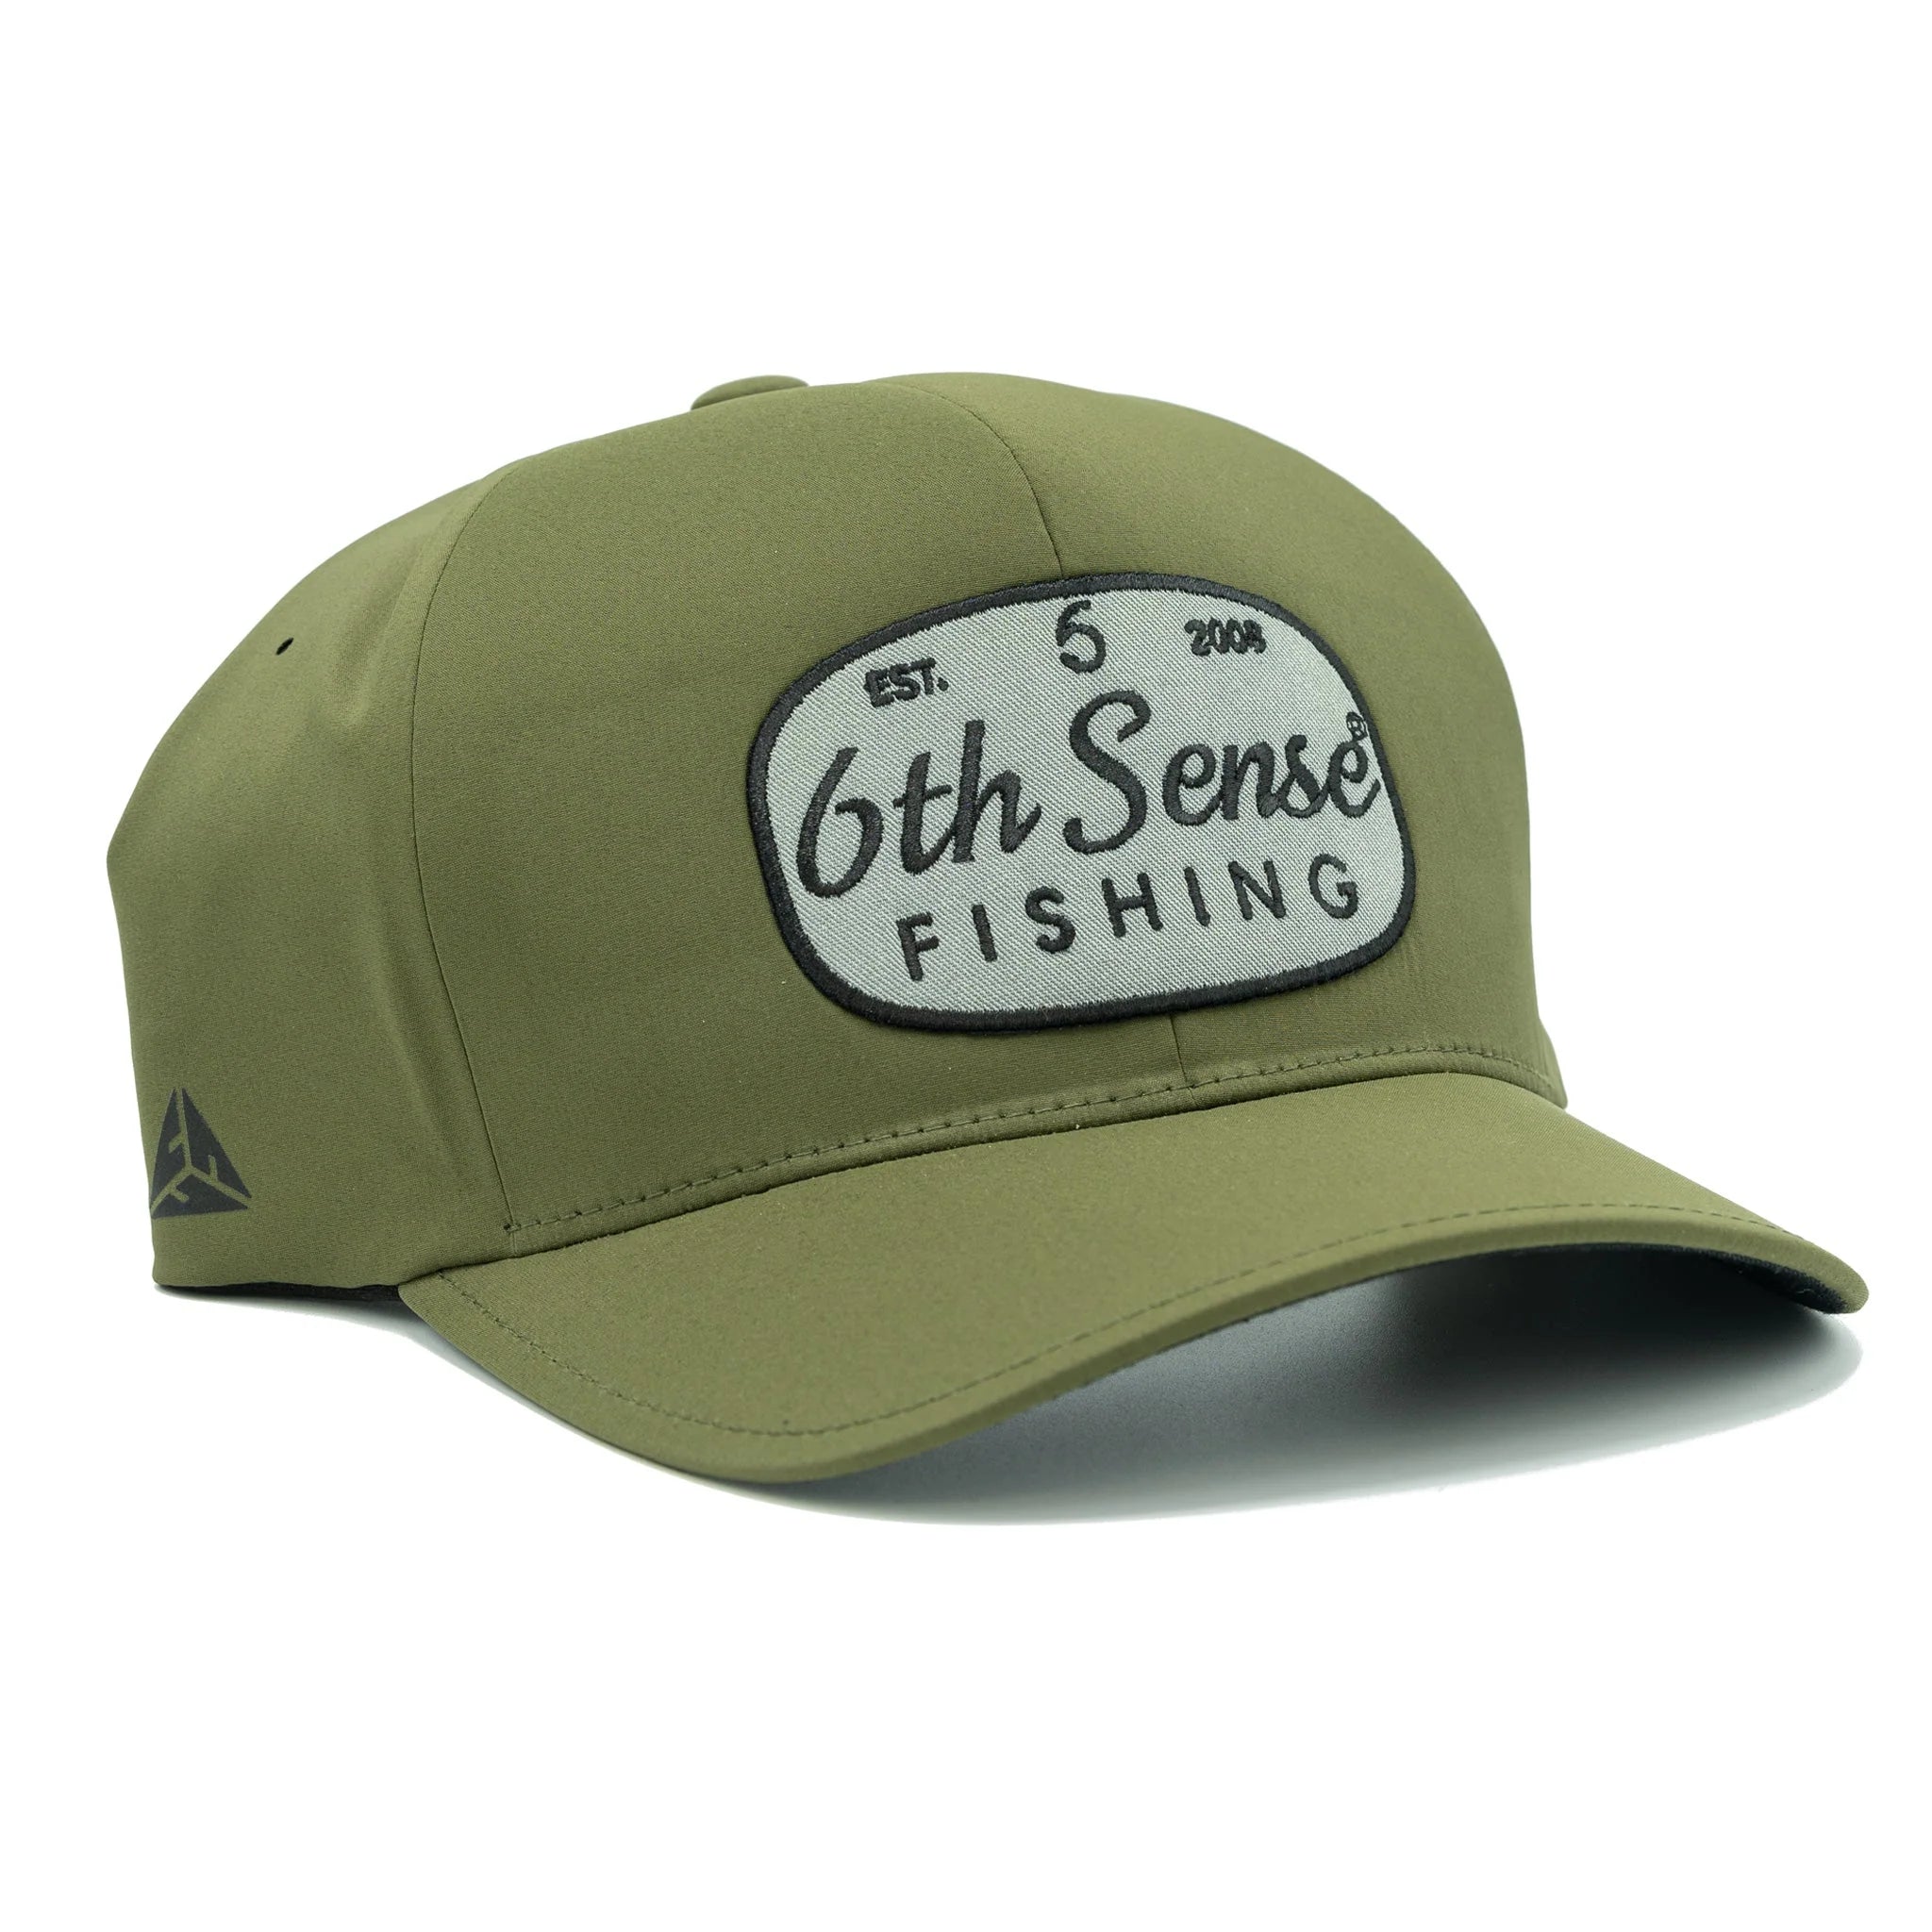 PRO Fishing Hats & Headwear for sale